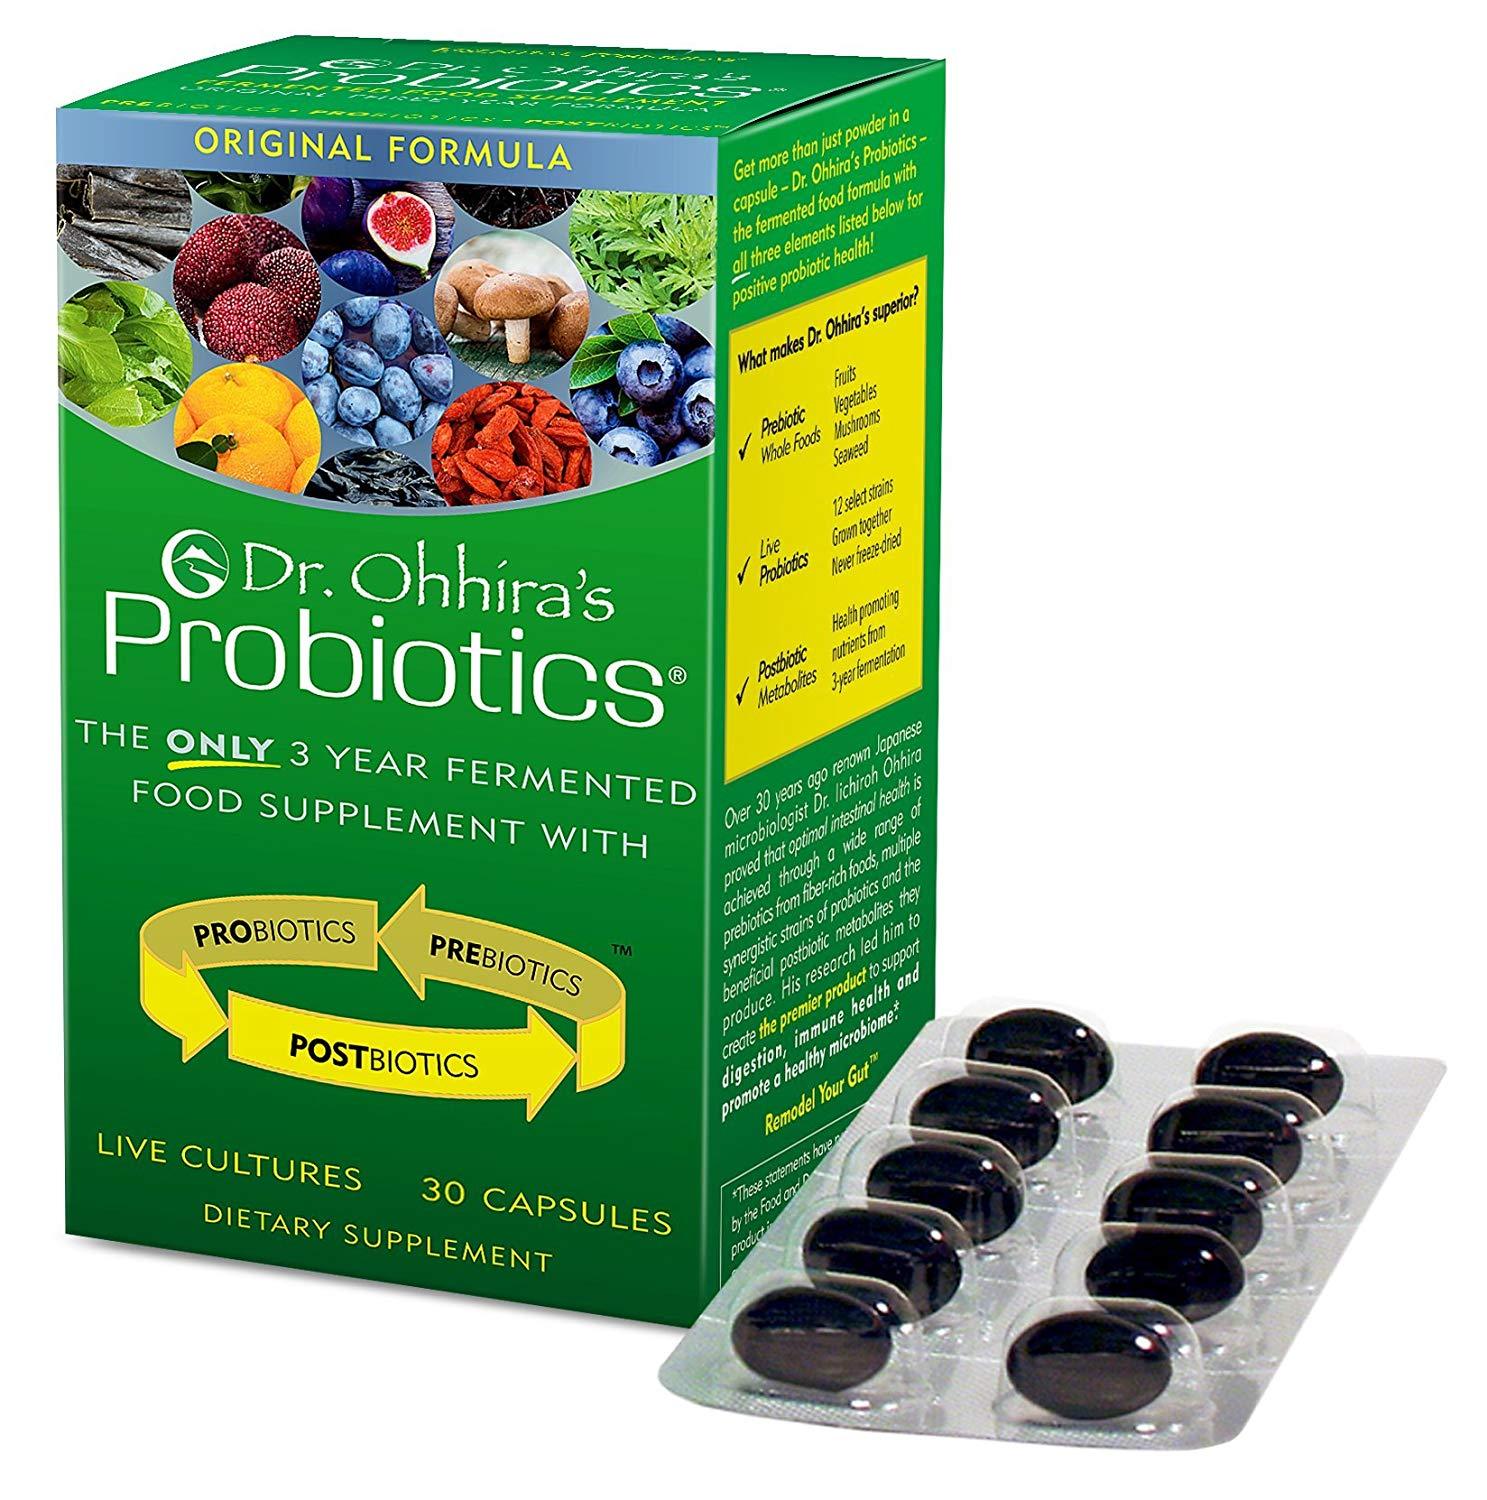 Primary image for Essential Formulas Dr. Ohhira's Probiotics Original Formula, 30 Capsules